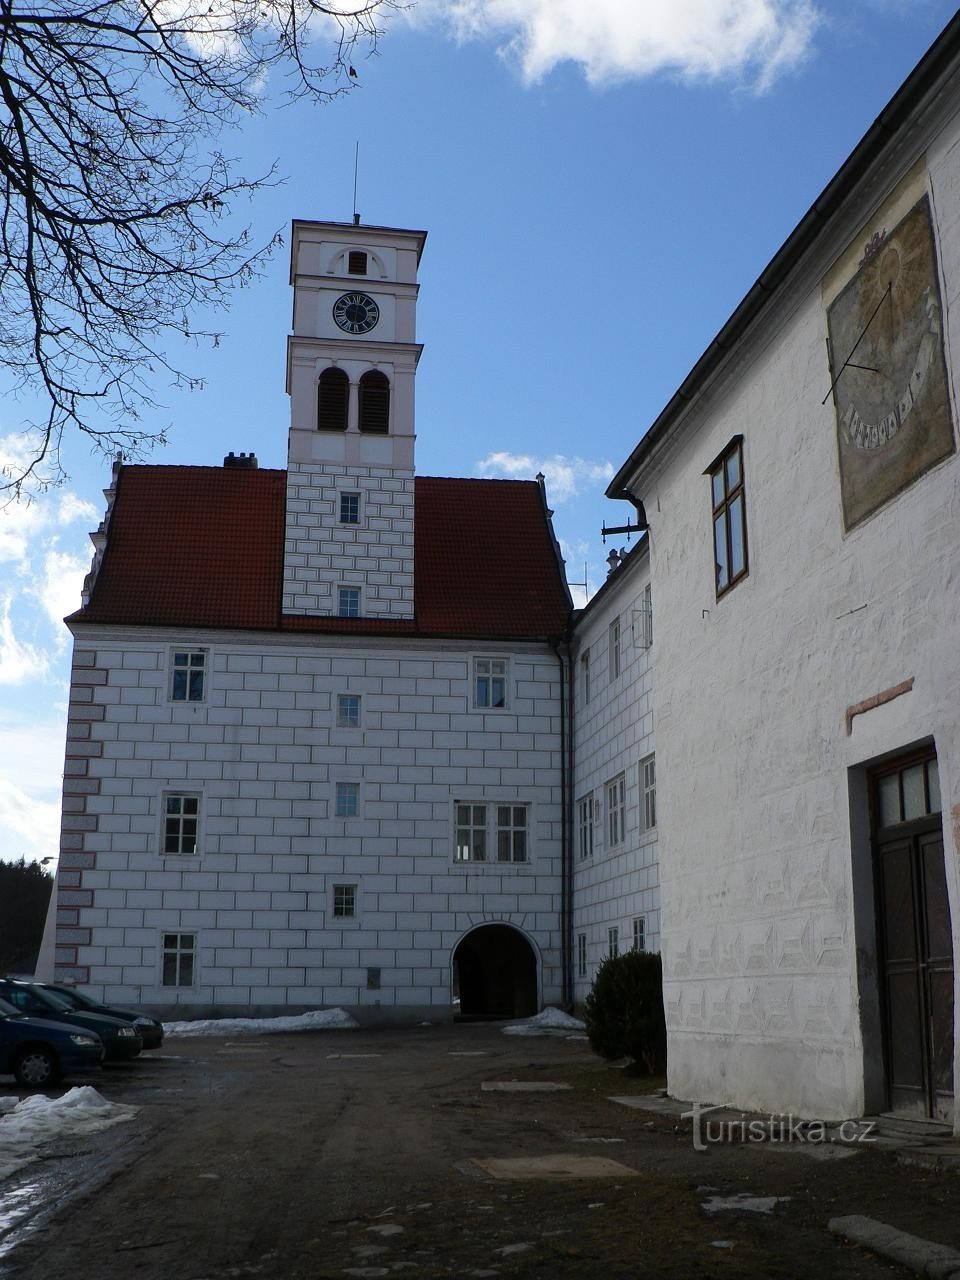 ジチョヴィツェ城、塔のある建物